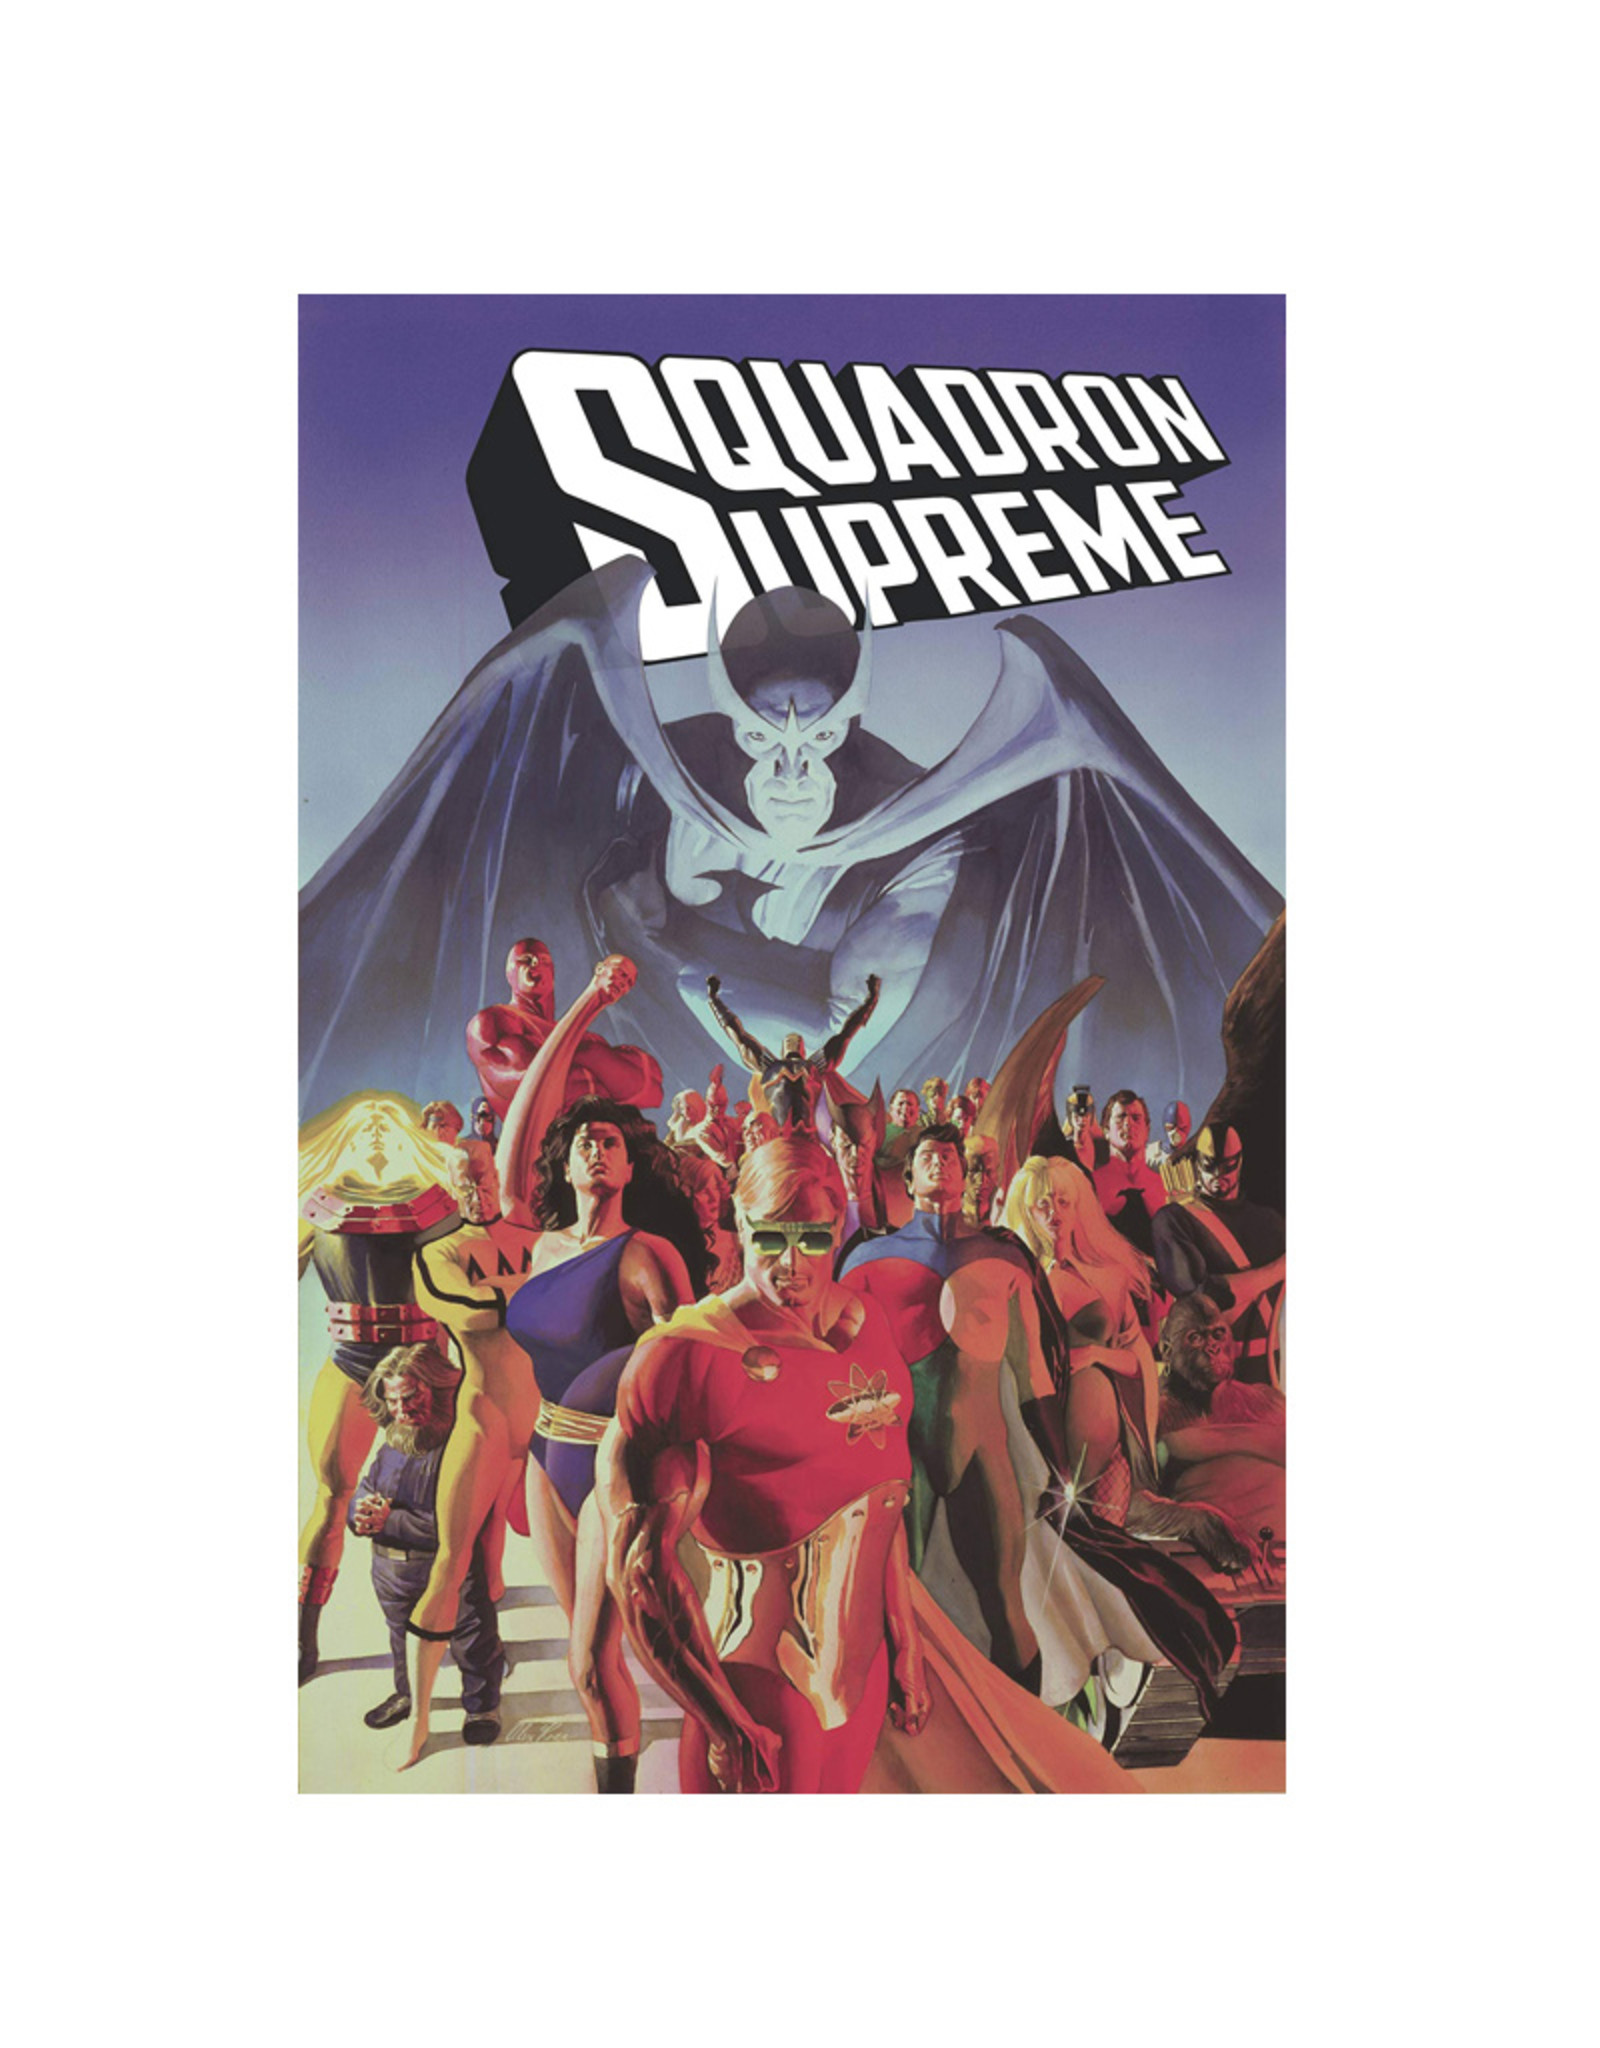 Marvel Comics Squadron Supreme TP